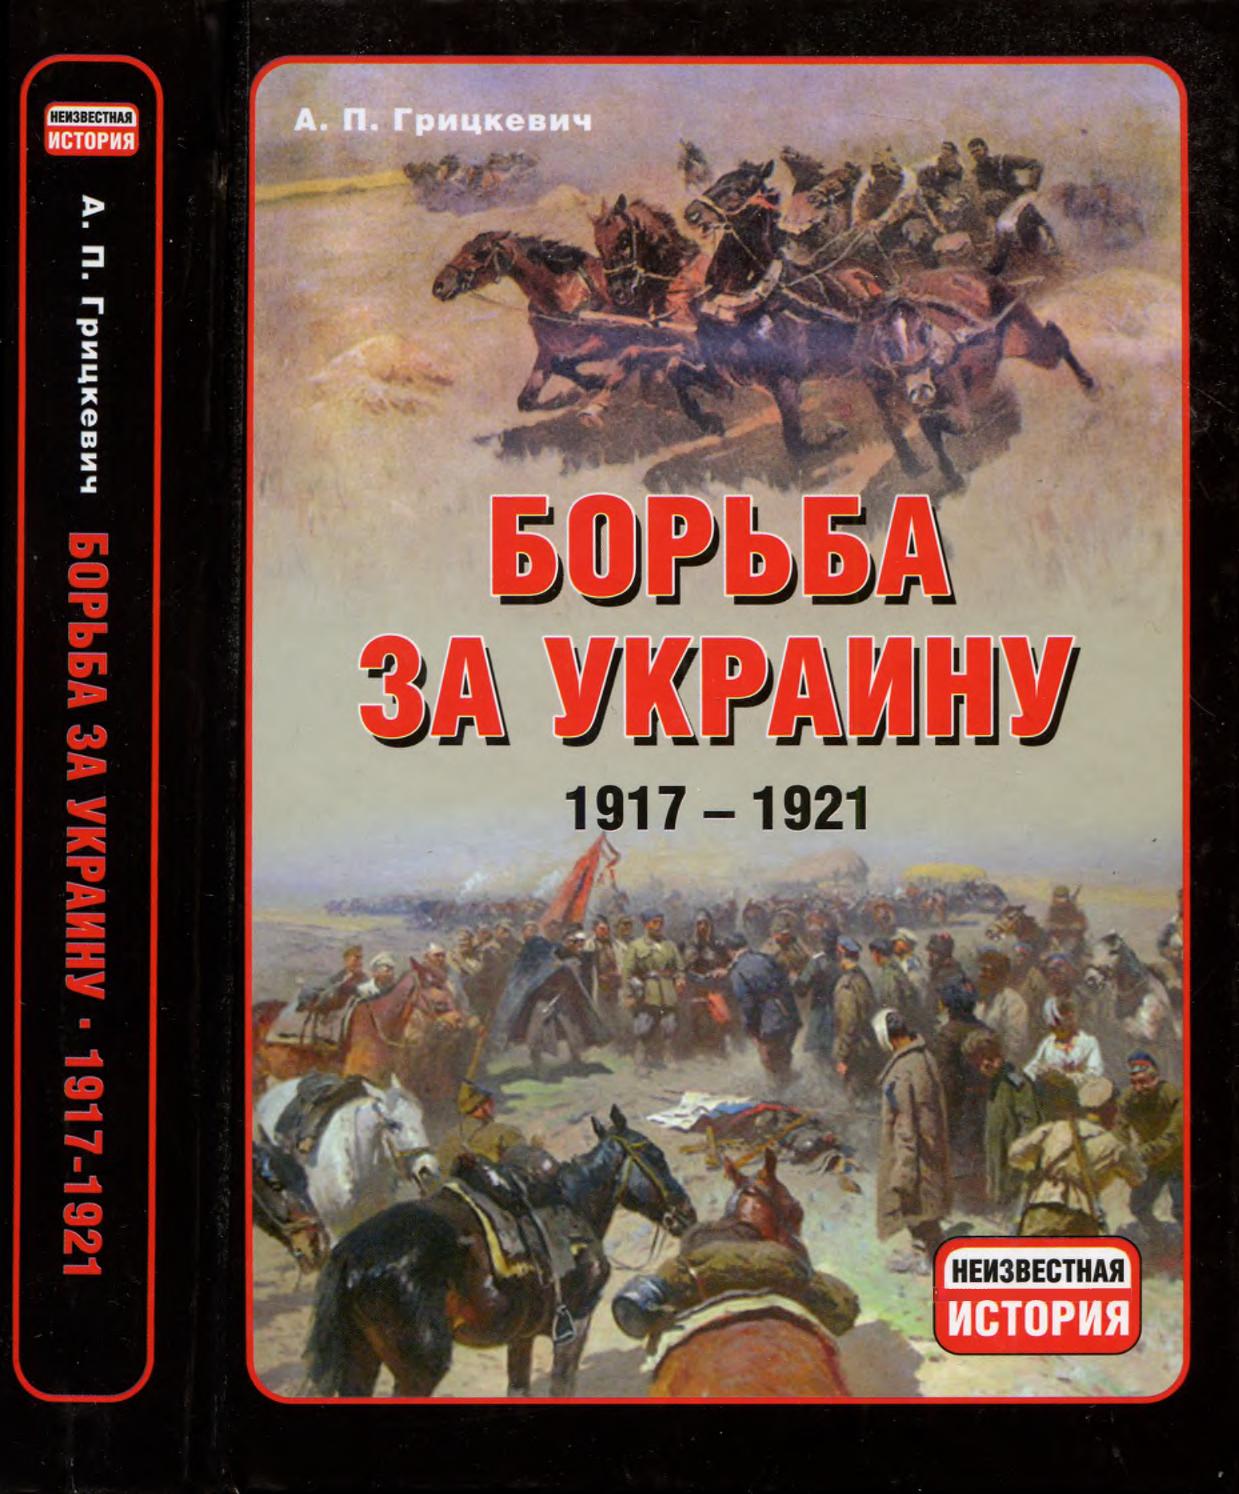 Борьба за Украину. 1917-1921. Часть 4-5, 2011, Анатолий Грицкевич